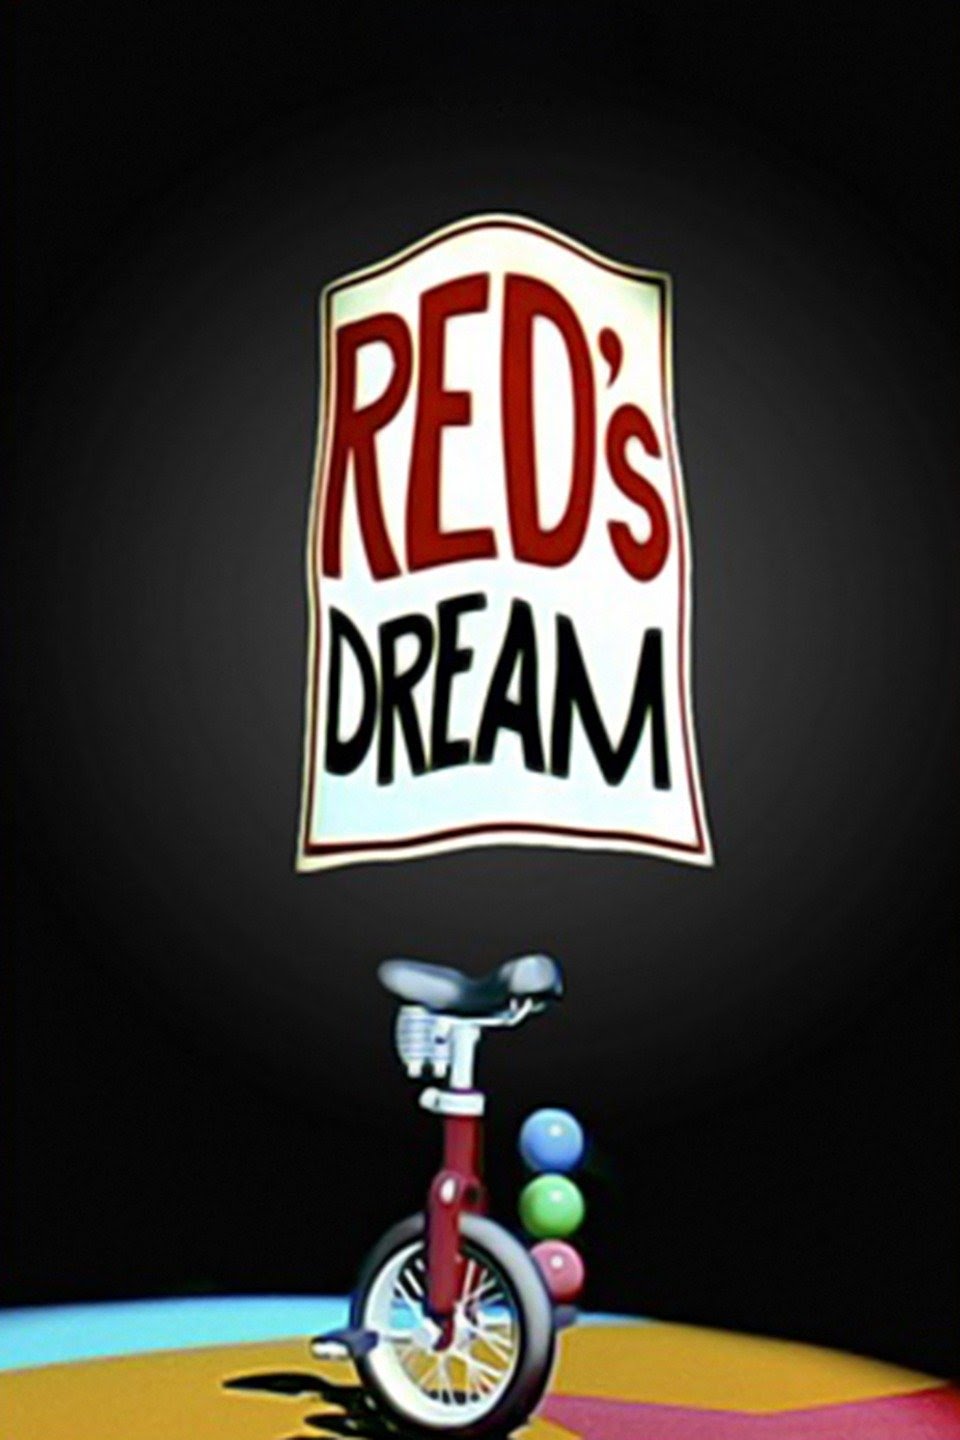 Red's Dream - Wikipedia